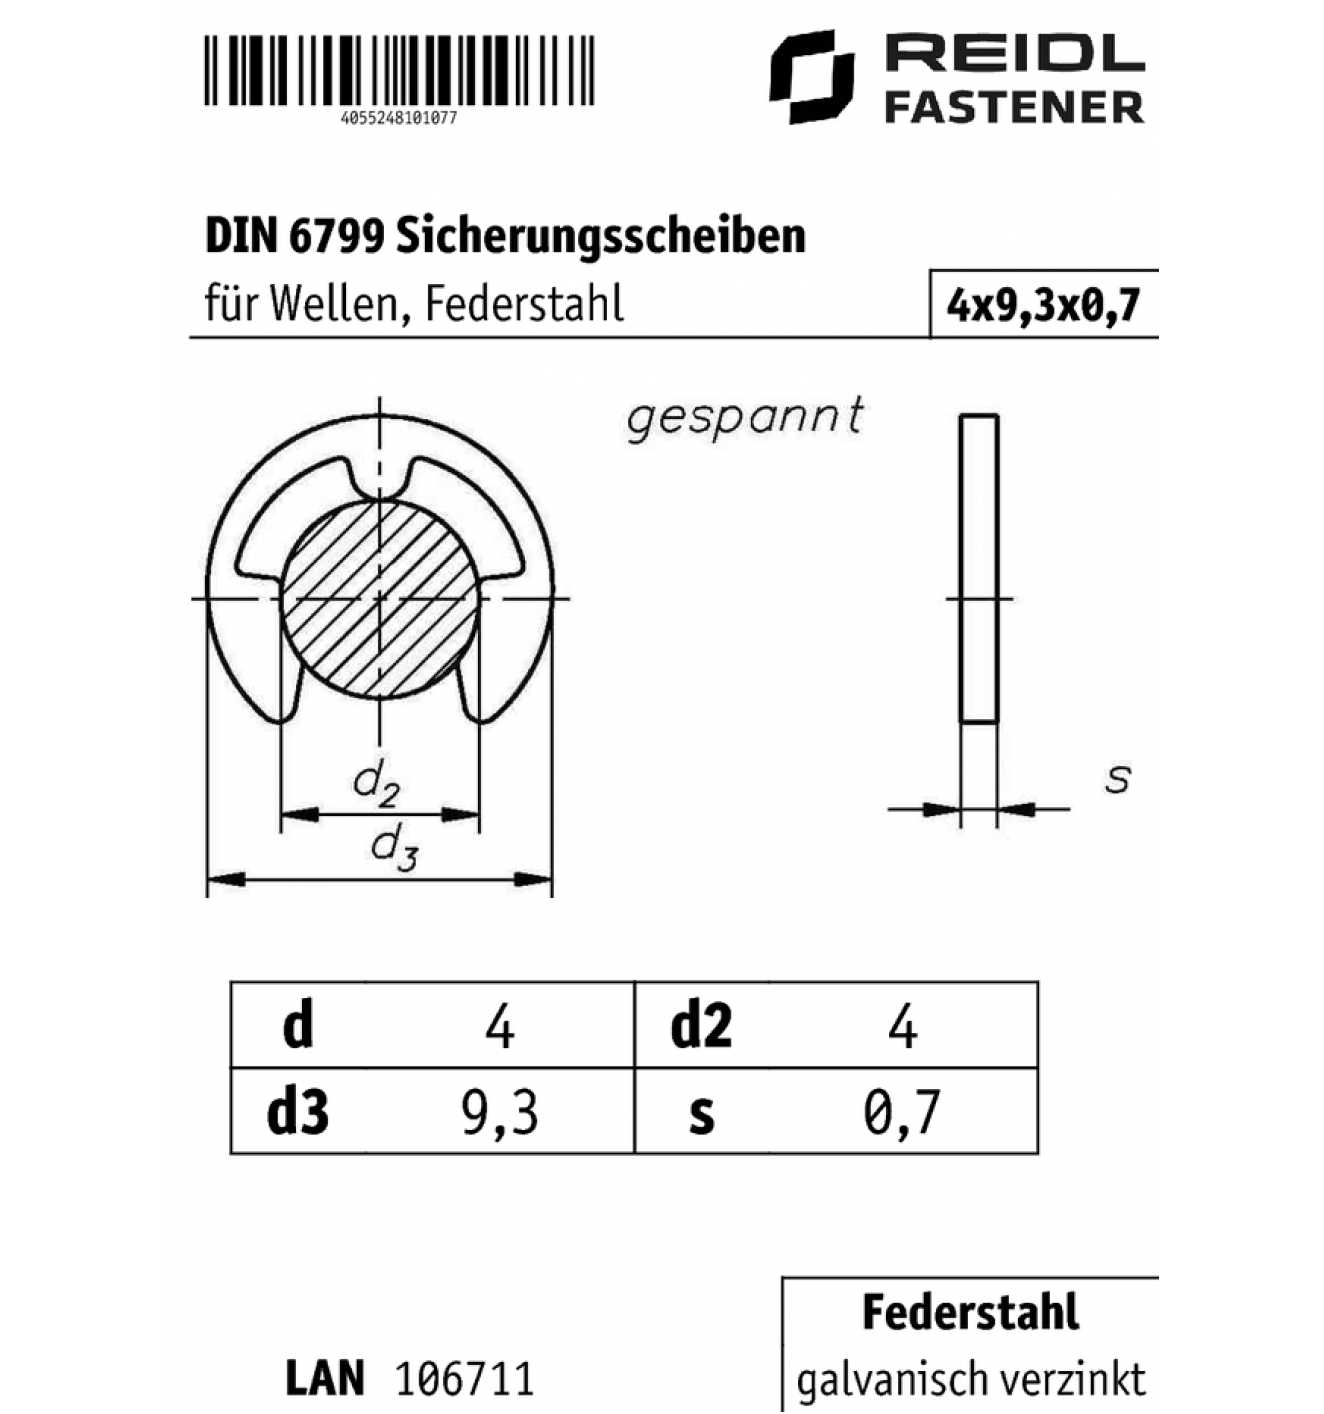 DIN 6799 Sicherungsscheiben 4 x 9,3 x 0,7, für Wellen, Federstahl  galvanisch verzinkt - bei  online kaufen